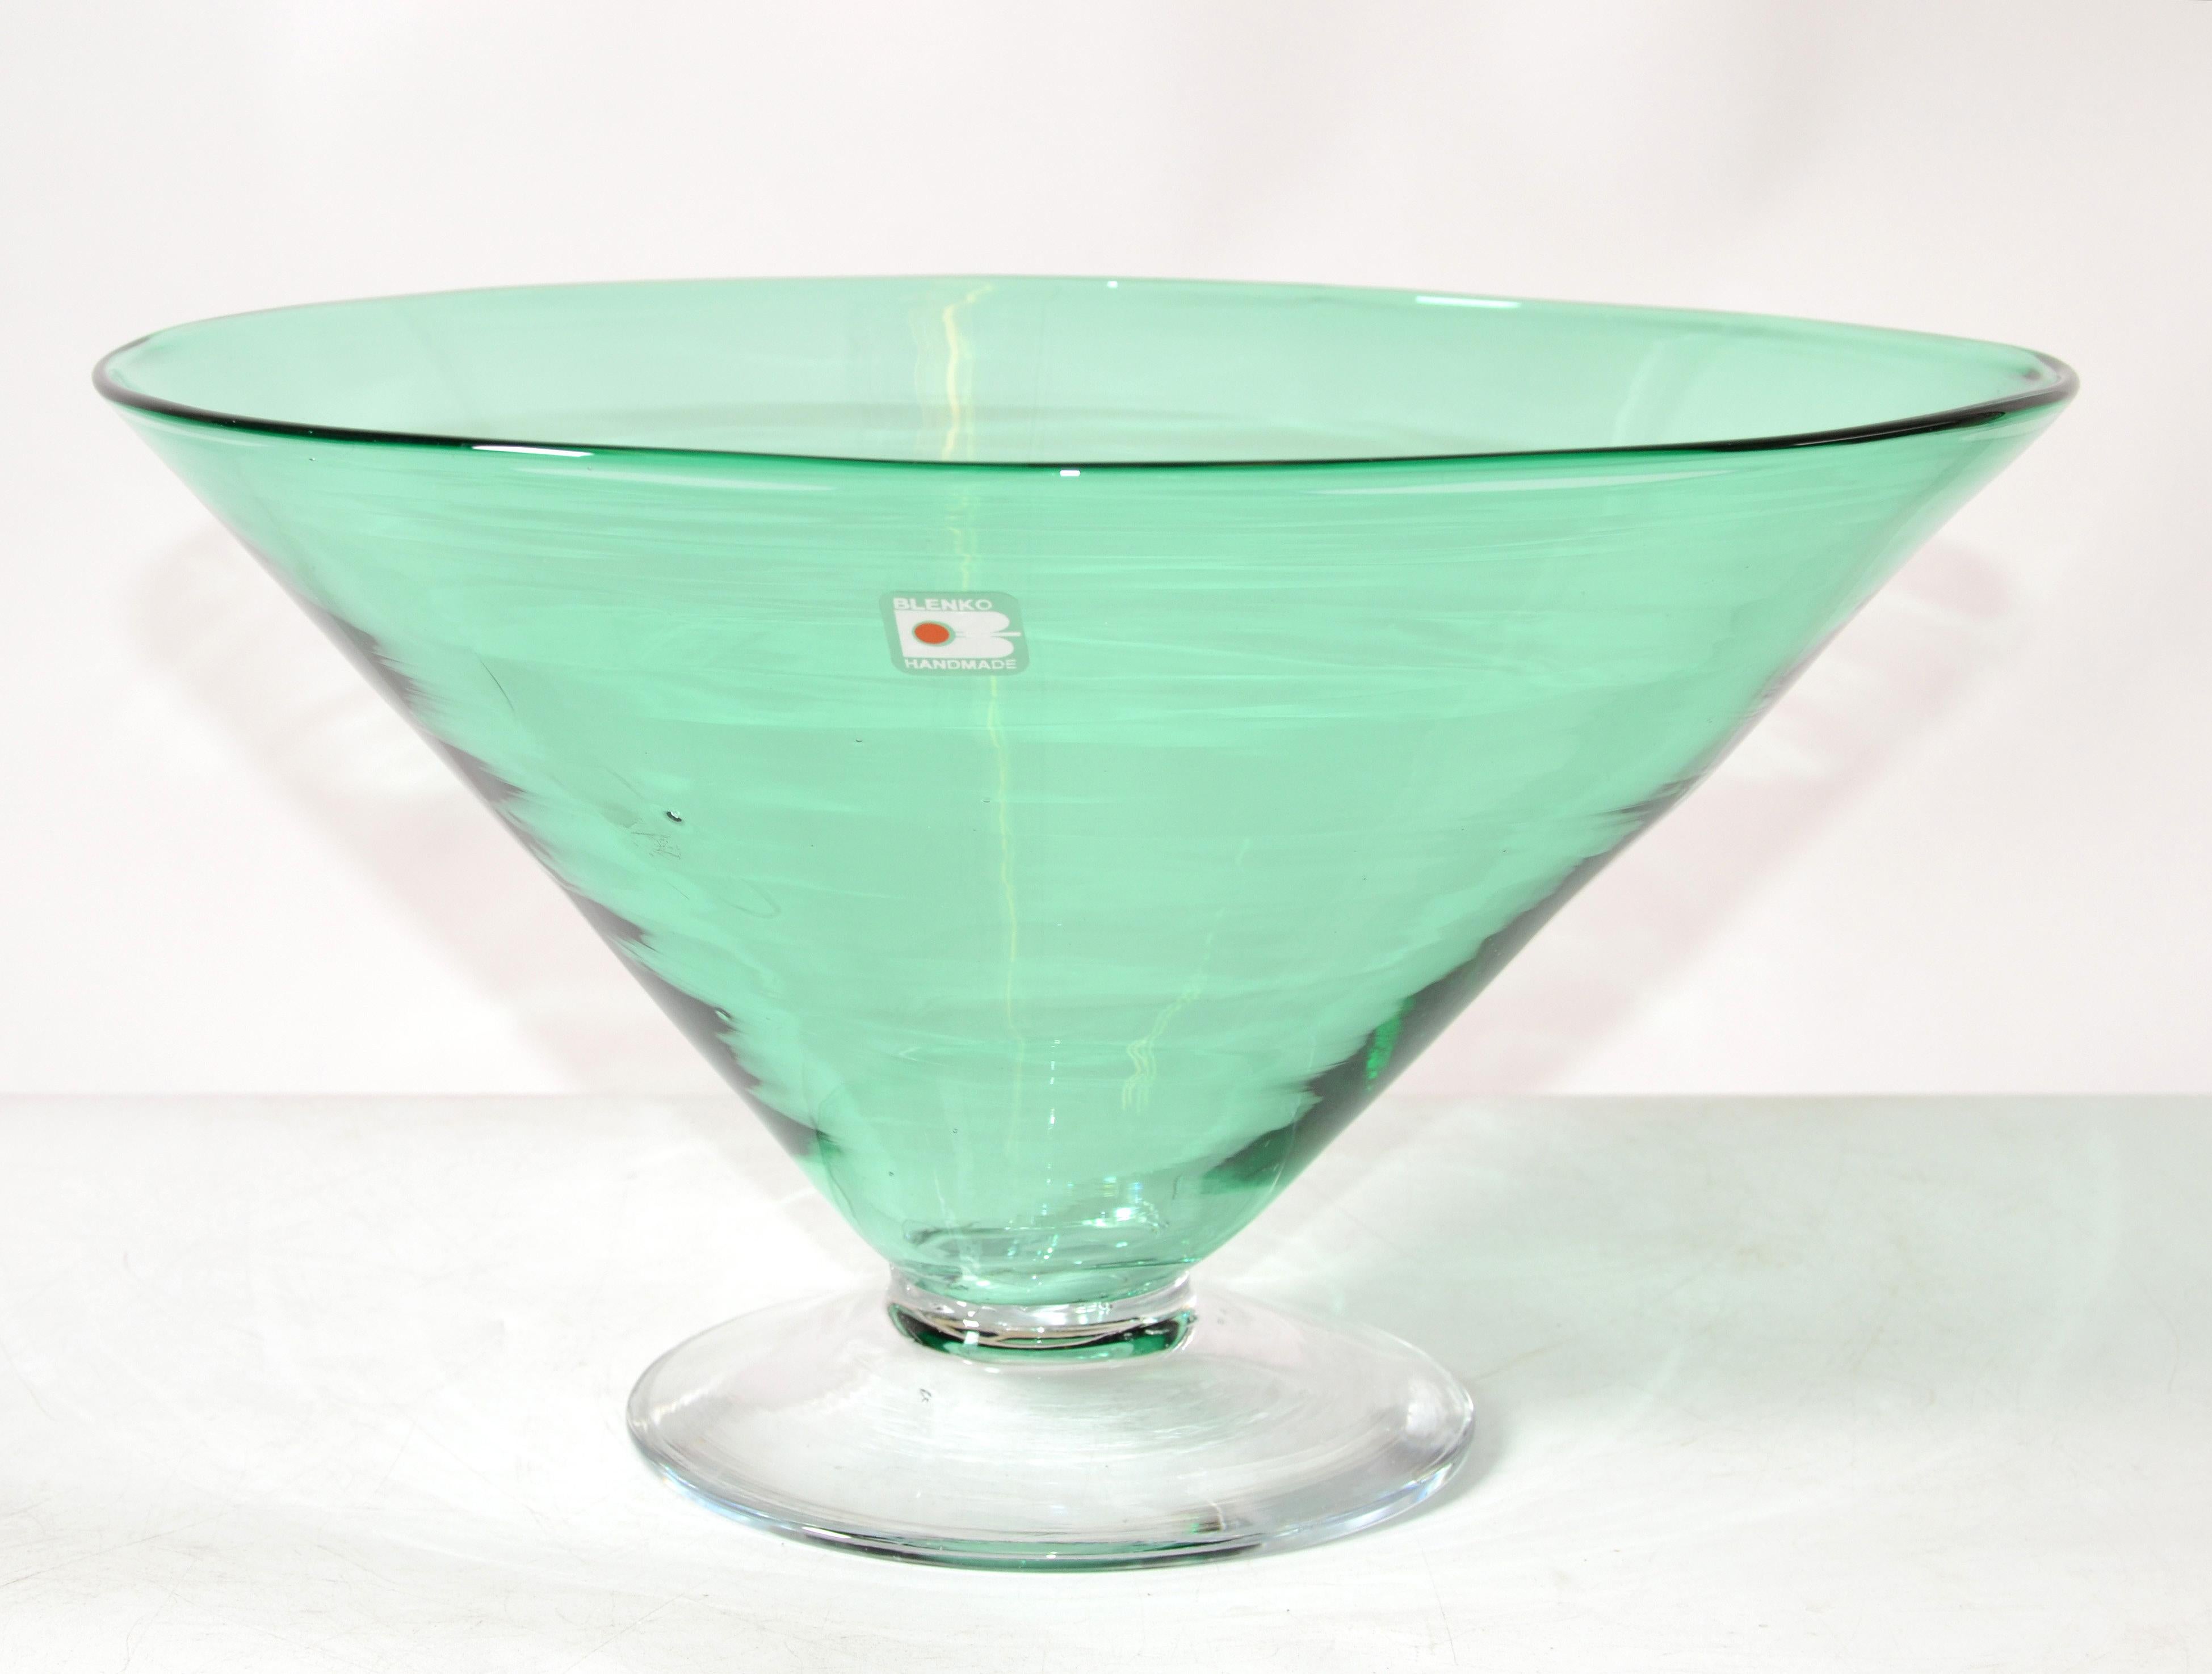 blenko green glass bowl